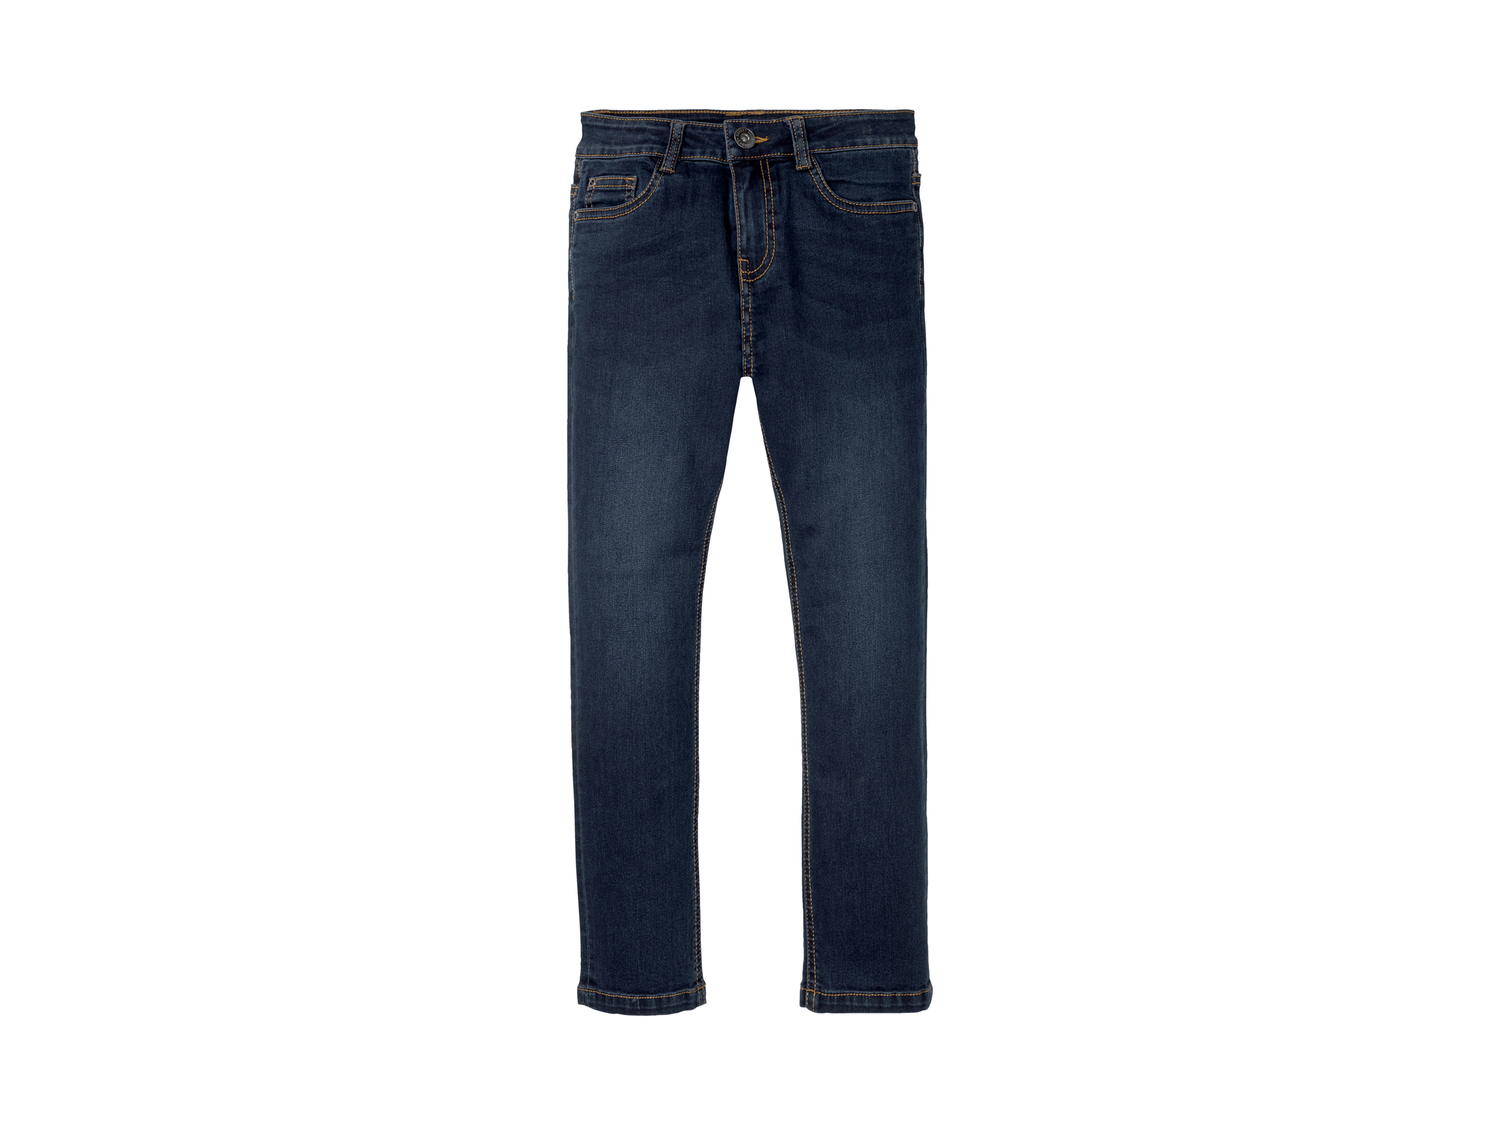 Jeans Skinny da bambino Pepperts, prezzo 9.99 &#8364; 
Misure: 6-14 anni
Taglie ...